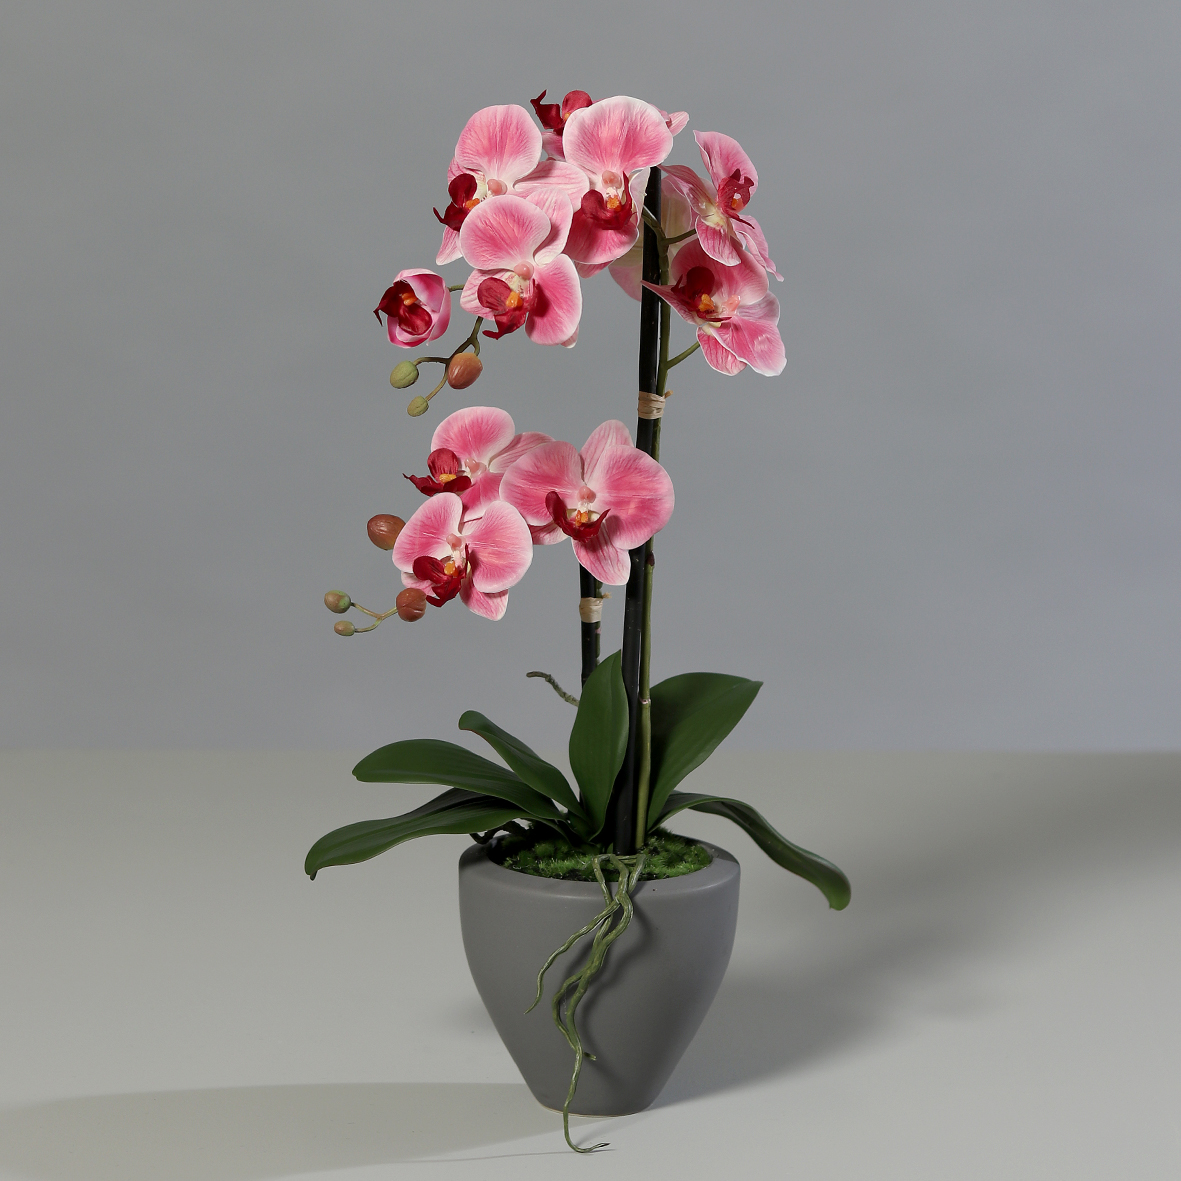 Orchidee Real Touch 62cm rosa-pink im grauen Keramiktopf DP Kunstblumen künstliche Blumen